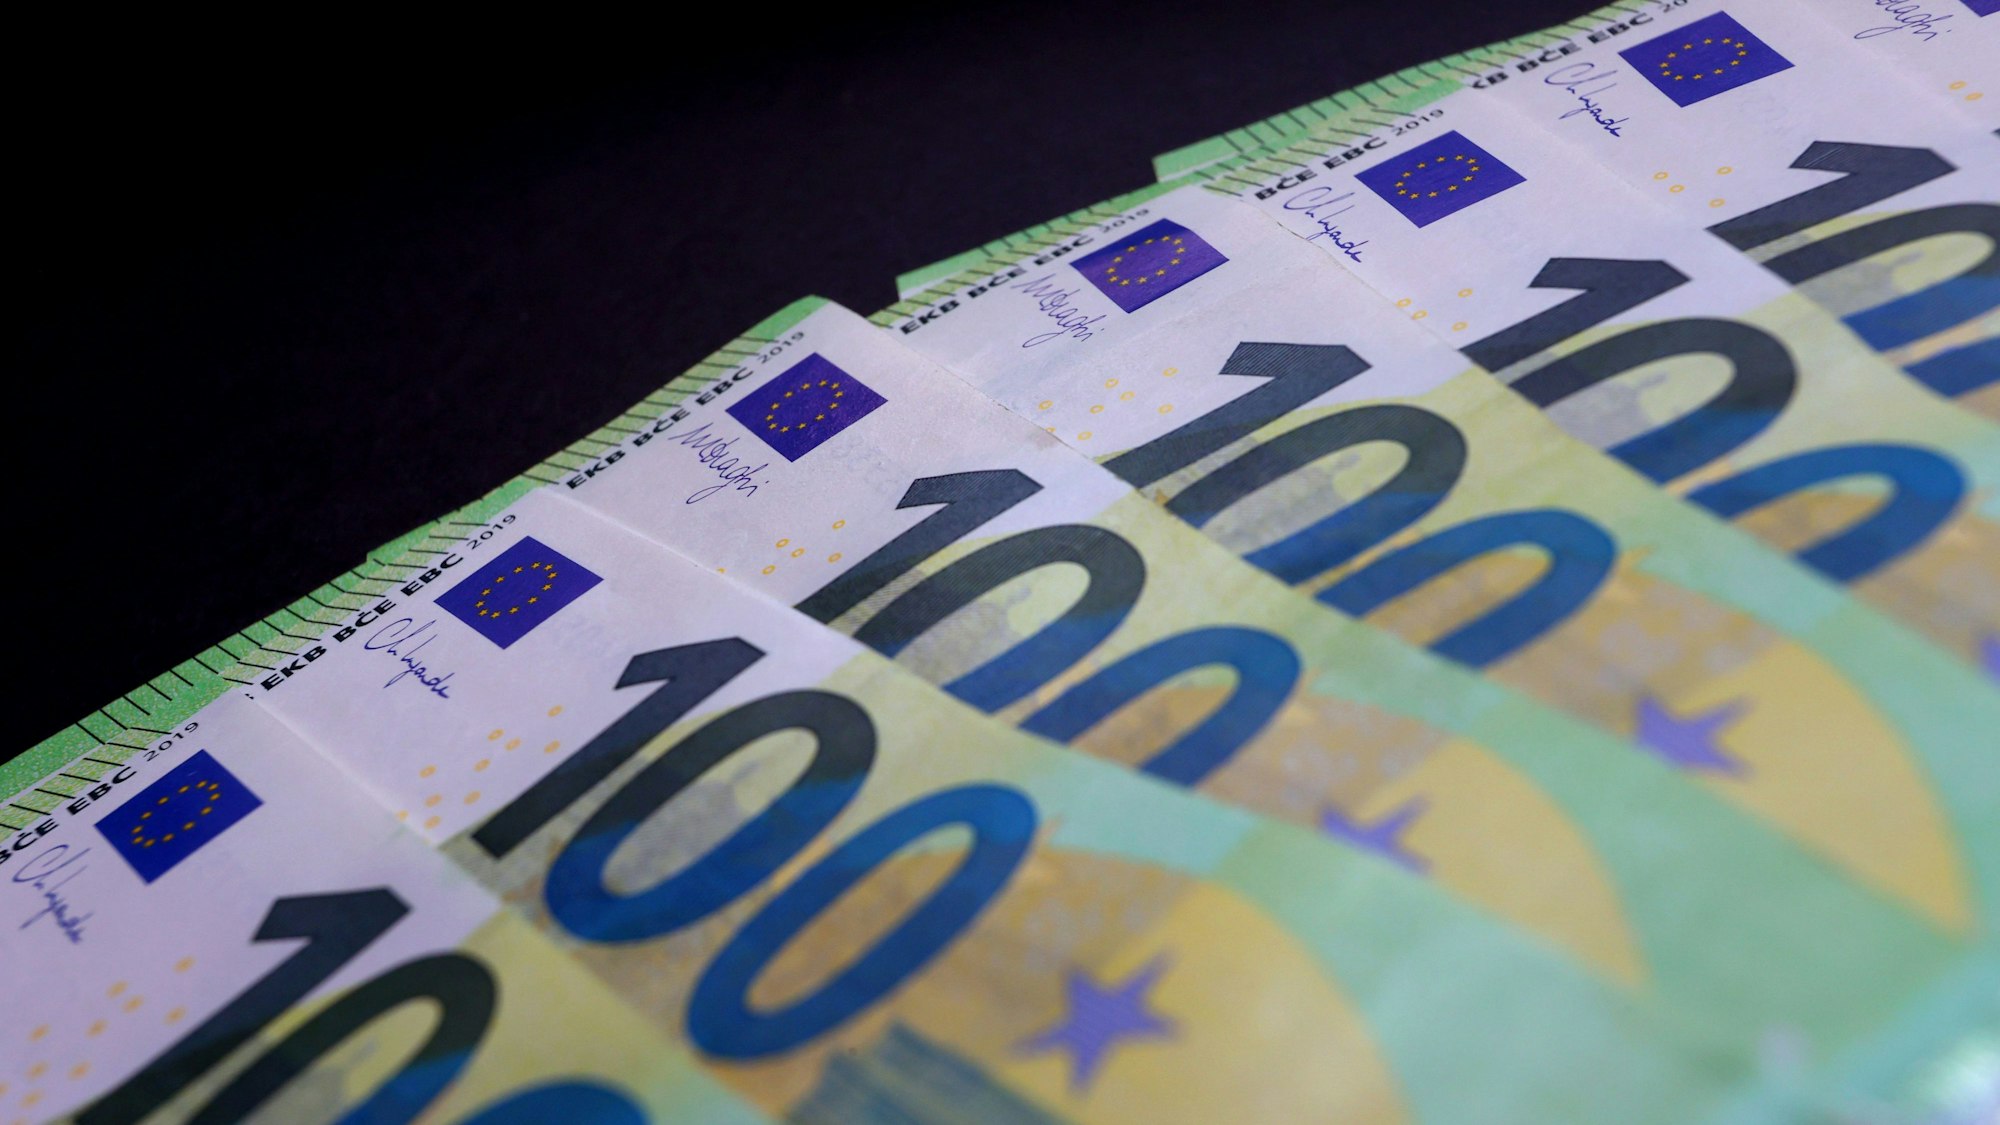 Mehrere hundert Euro Scheine liegen auf einem Tisch.